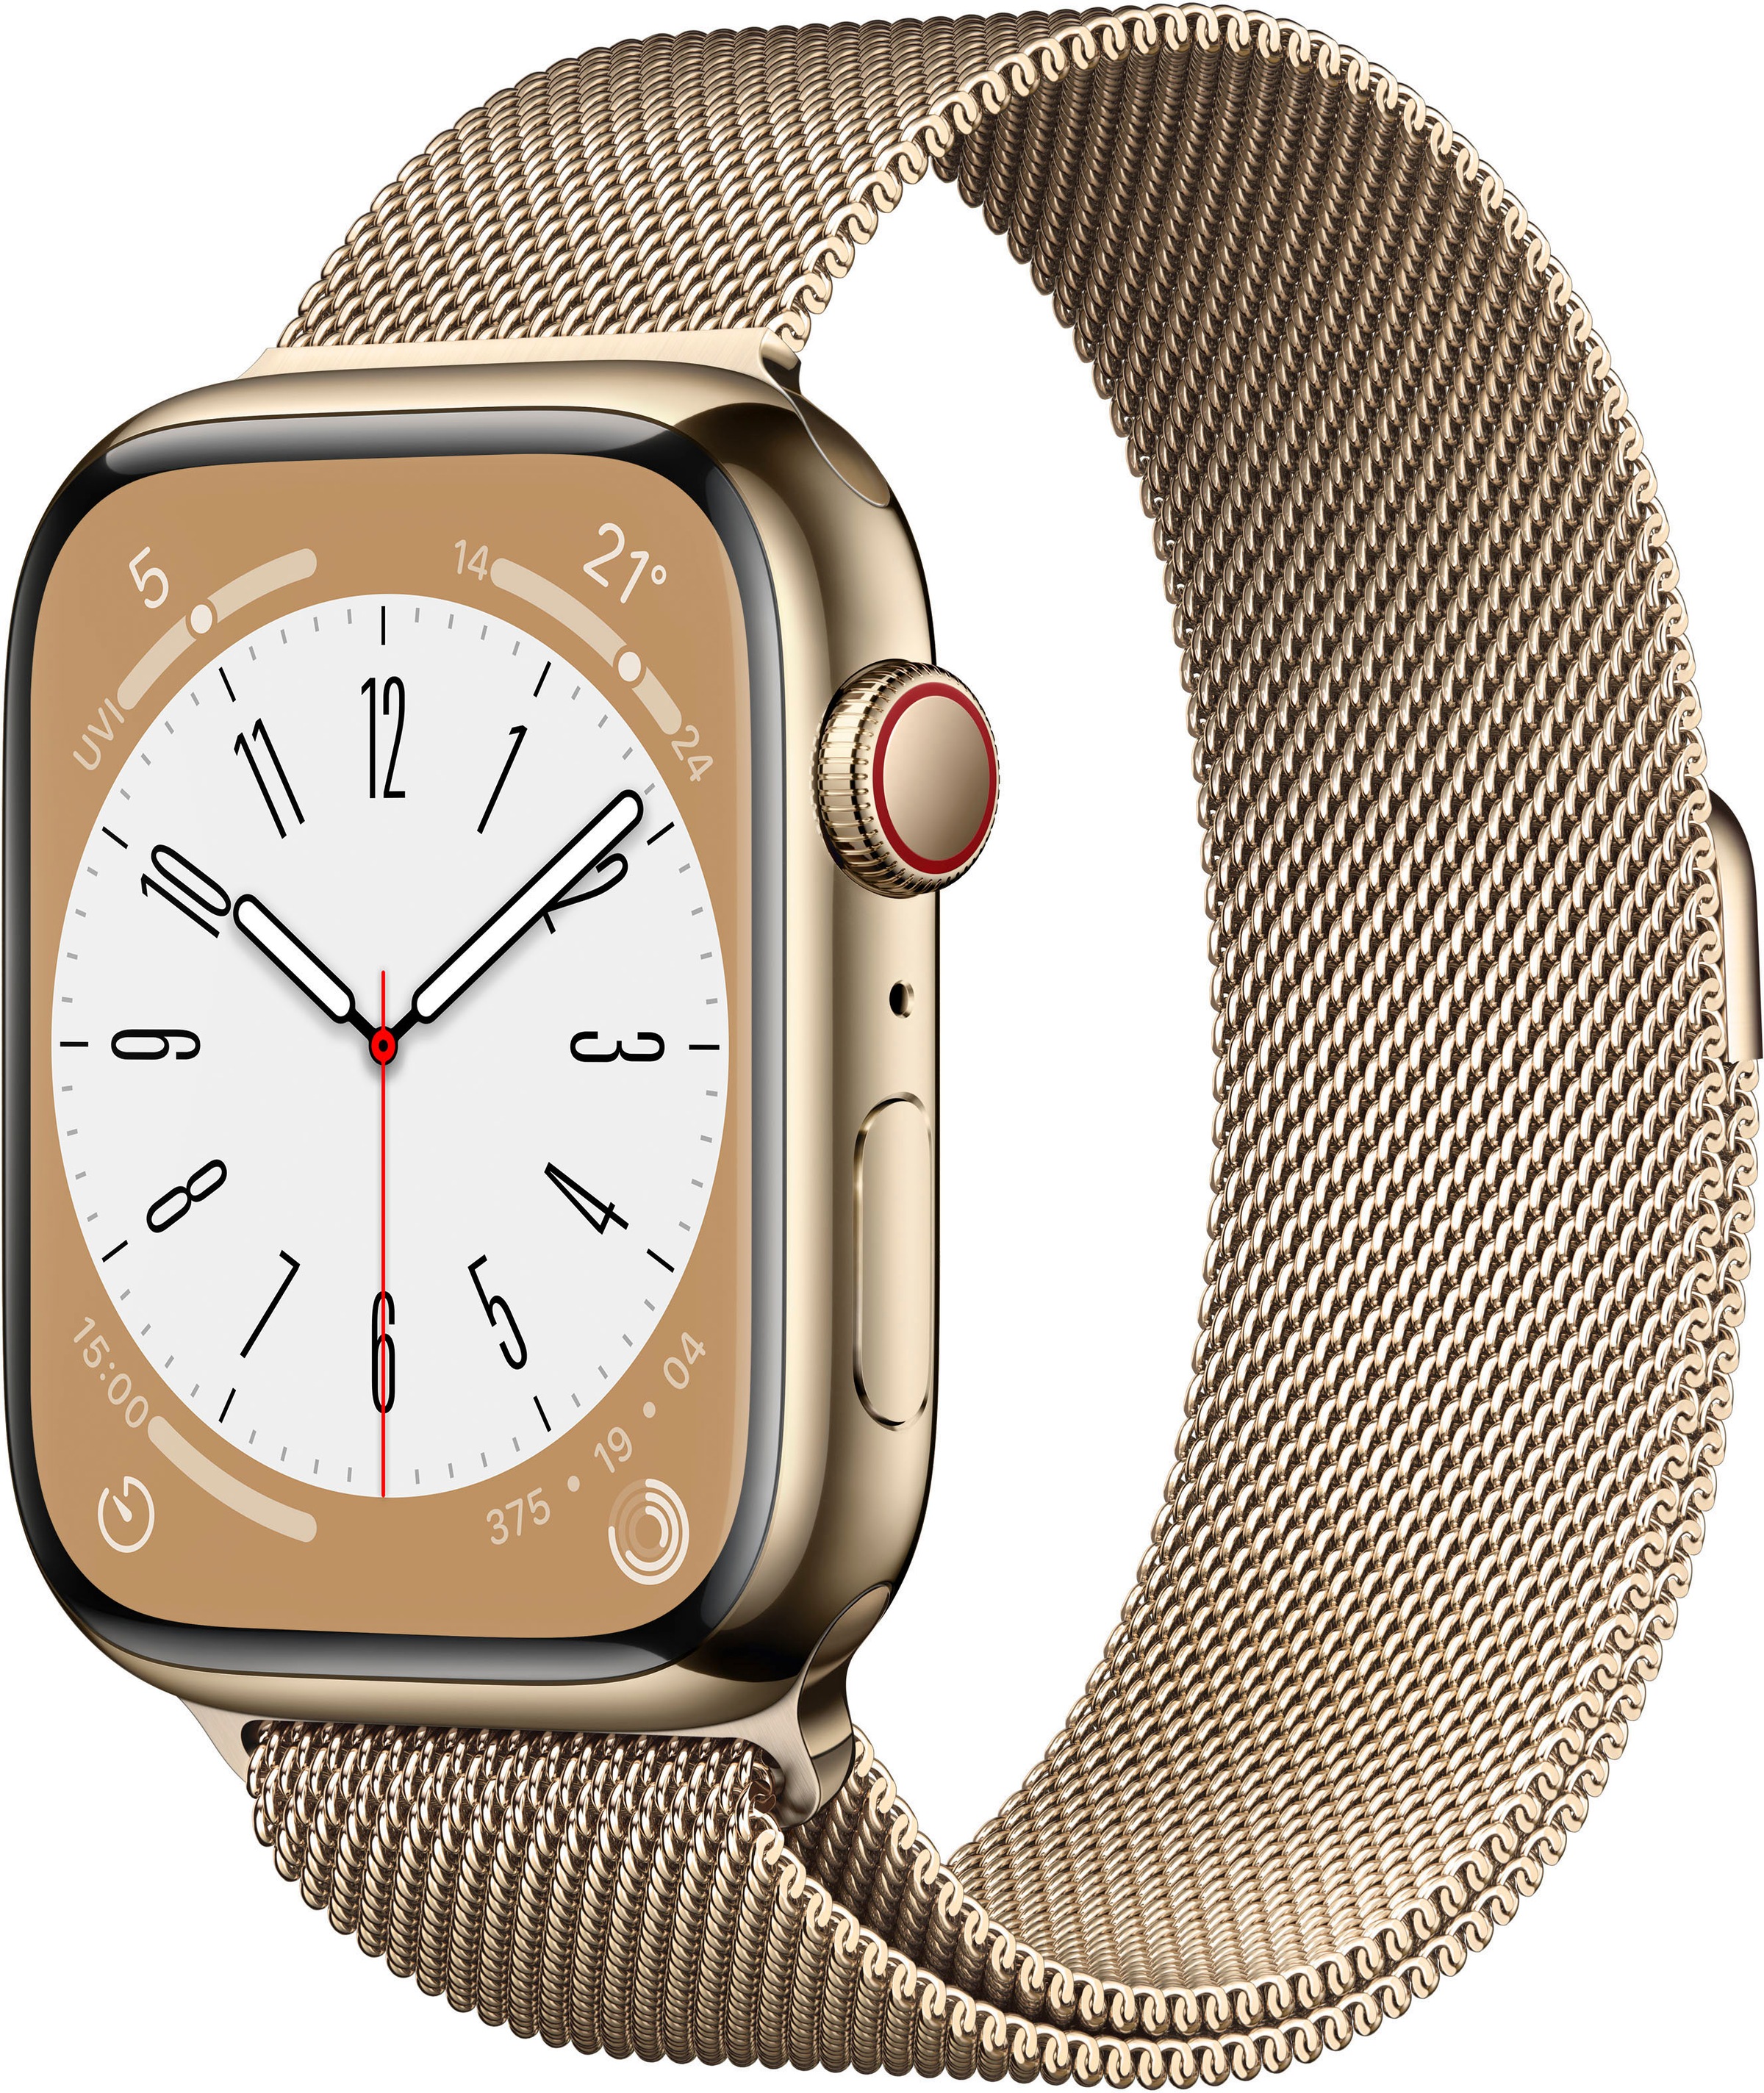 Gesundheit. Milanaise«, BAUR Handgelenk.) Edelstahl 8 Series 45mm Apple Cellular »Watch (Die Zukunft + der GPS Am Watch |